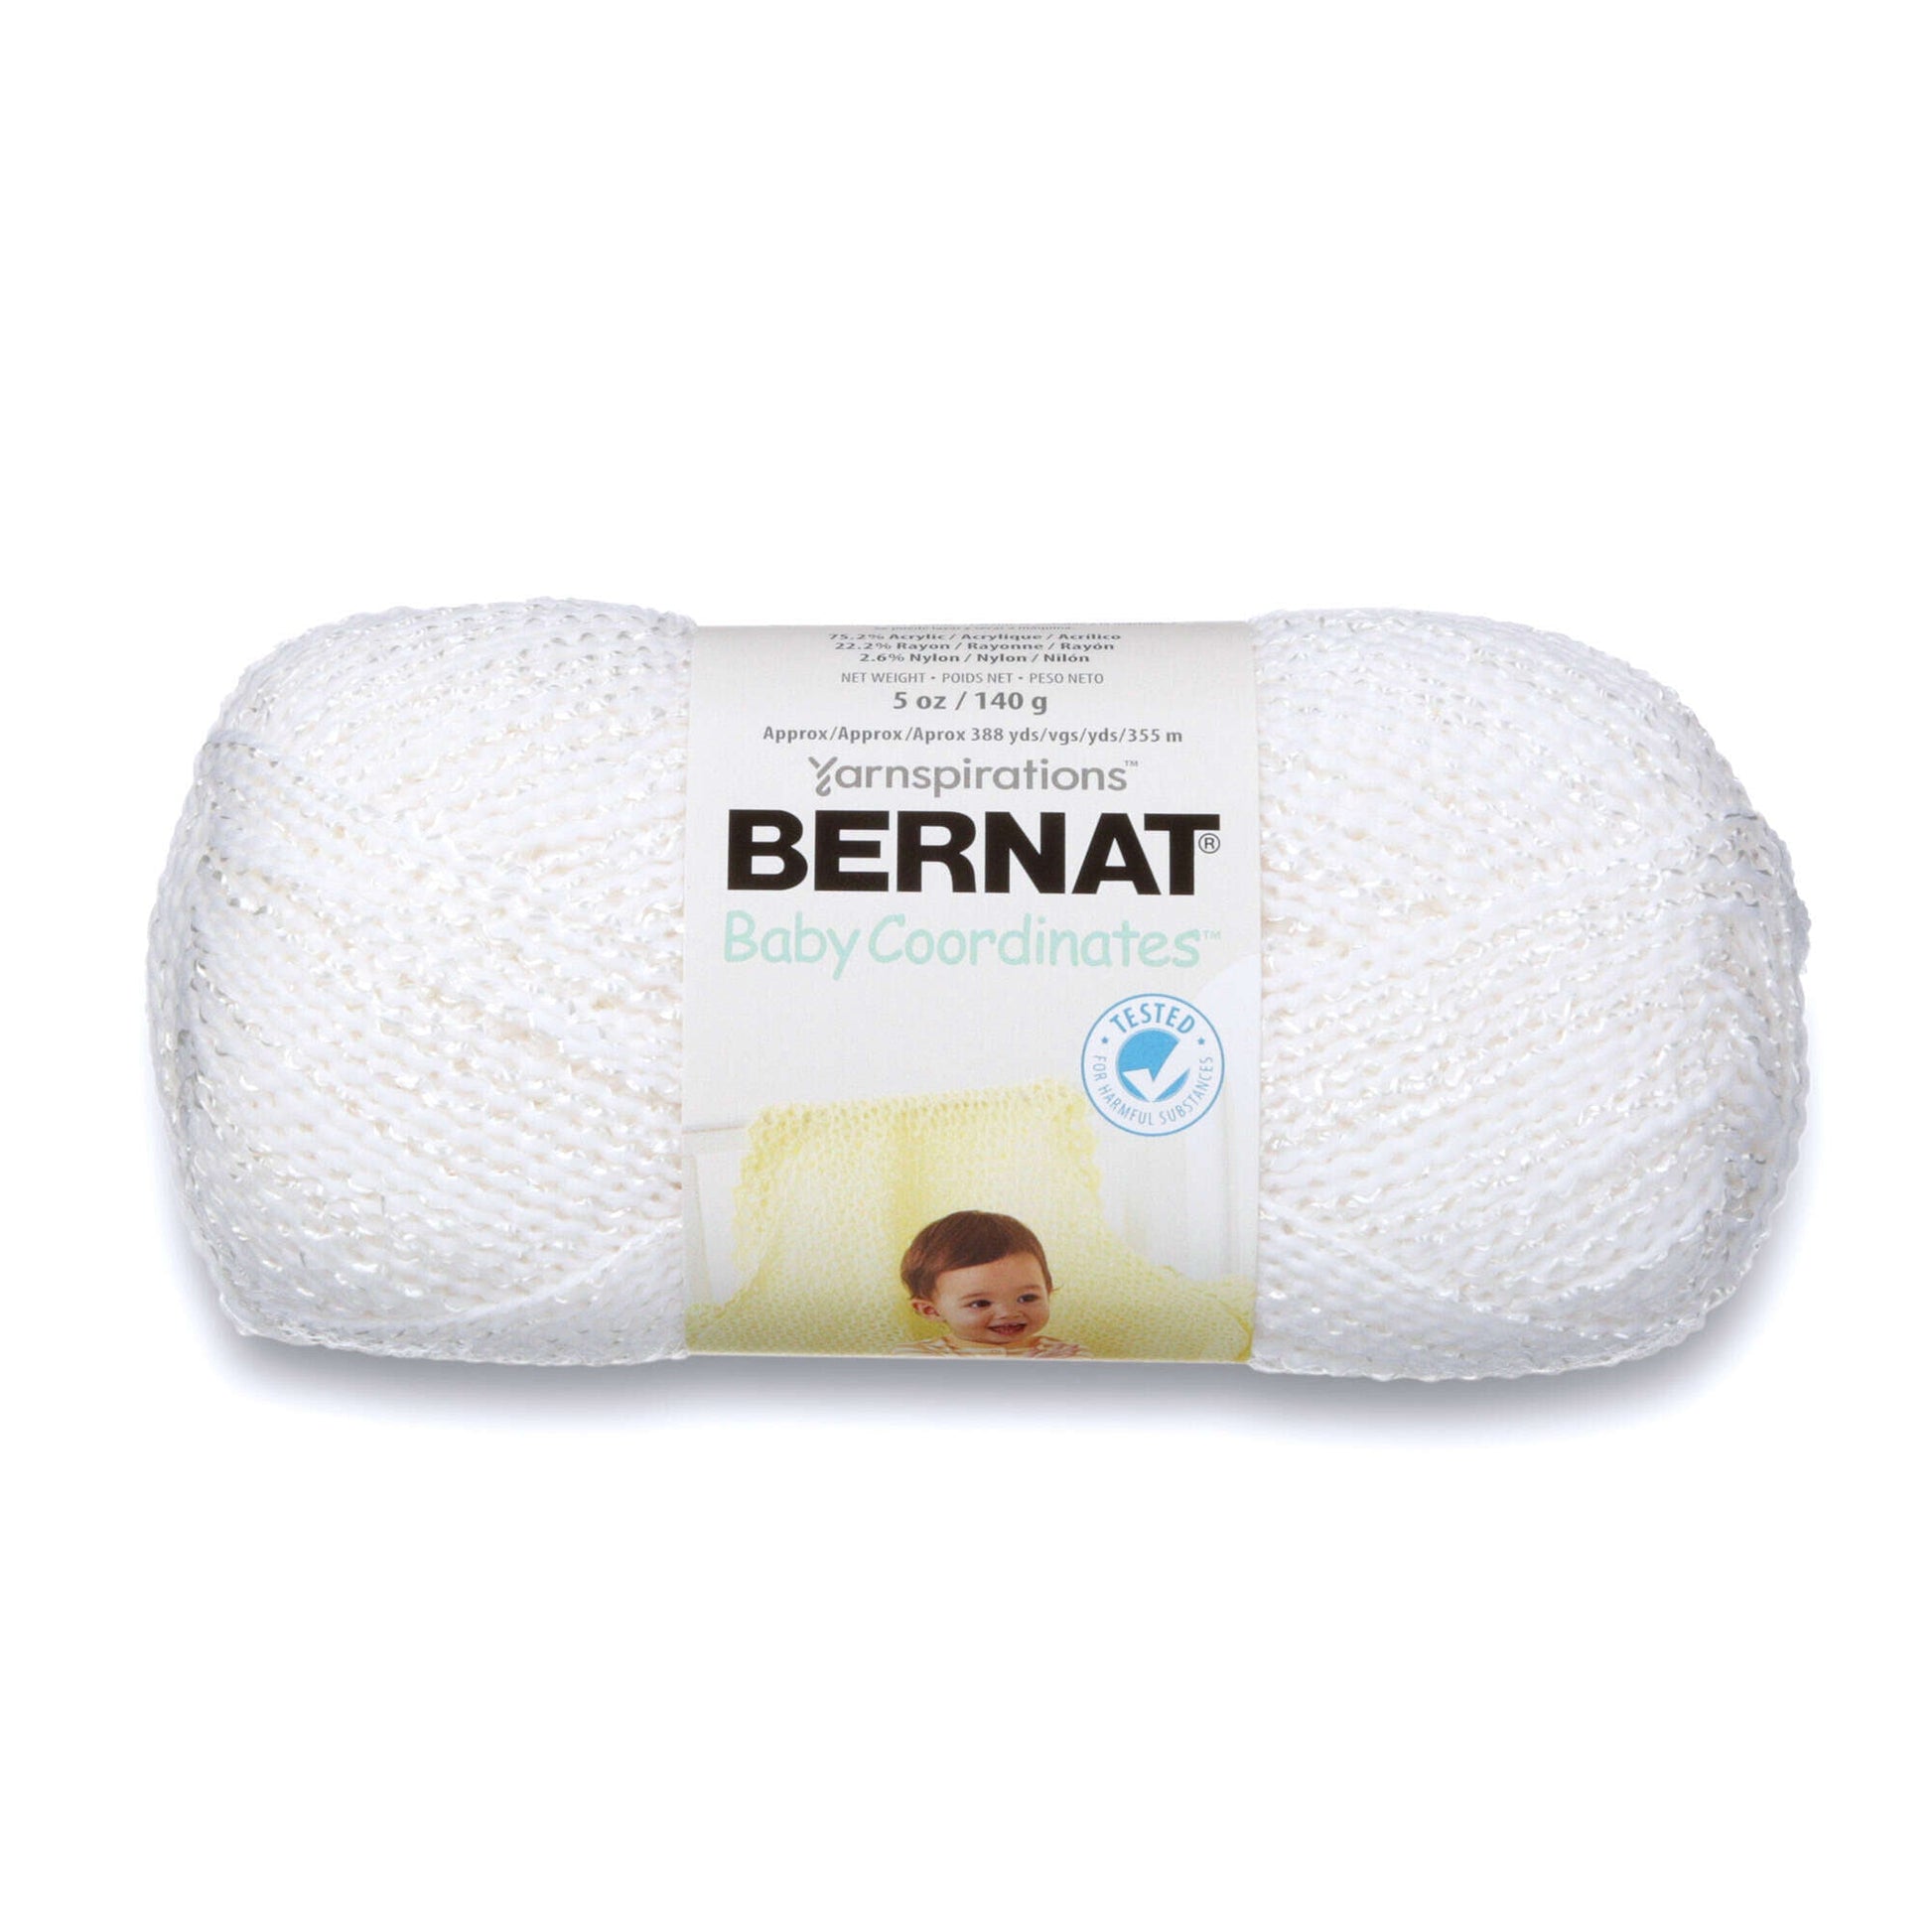 Bernat Baby Coordinates Yarn - Discontinued Shades